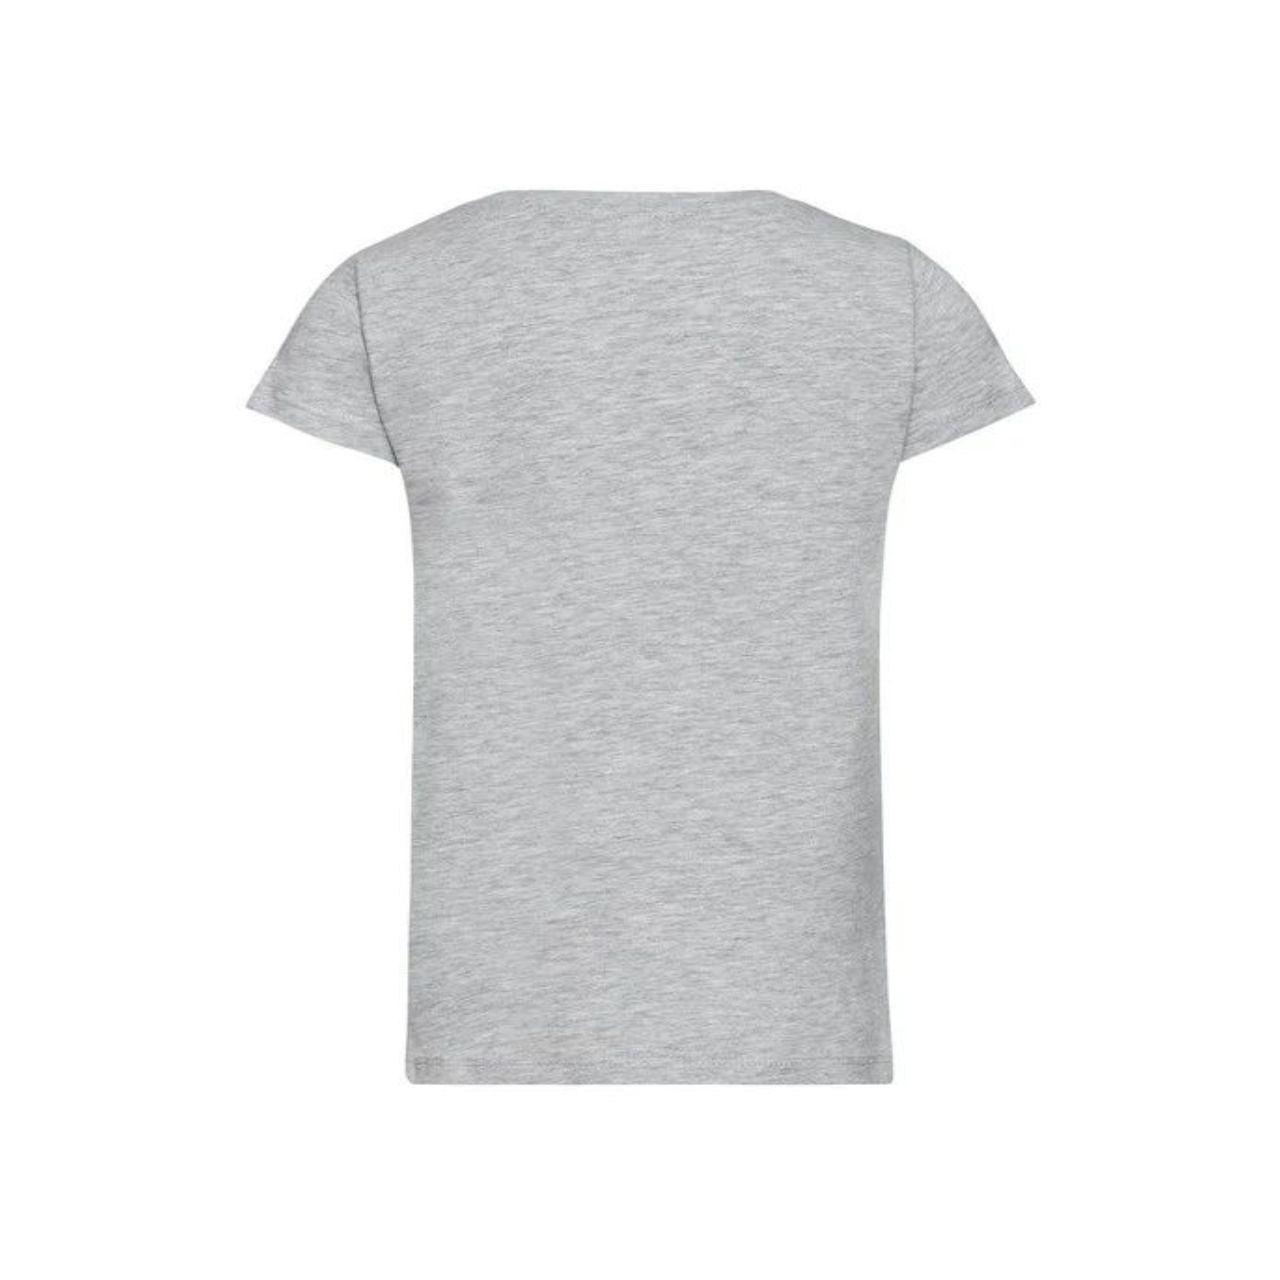 تی شرت آستین کوتاه دخترانه مکس مدل 3994 -  - 2